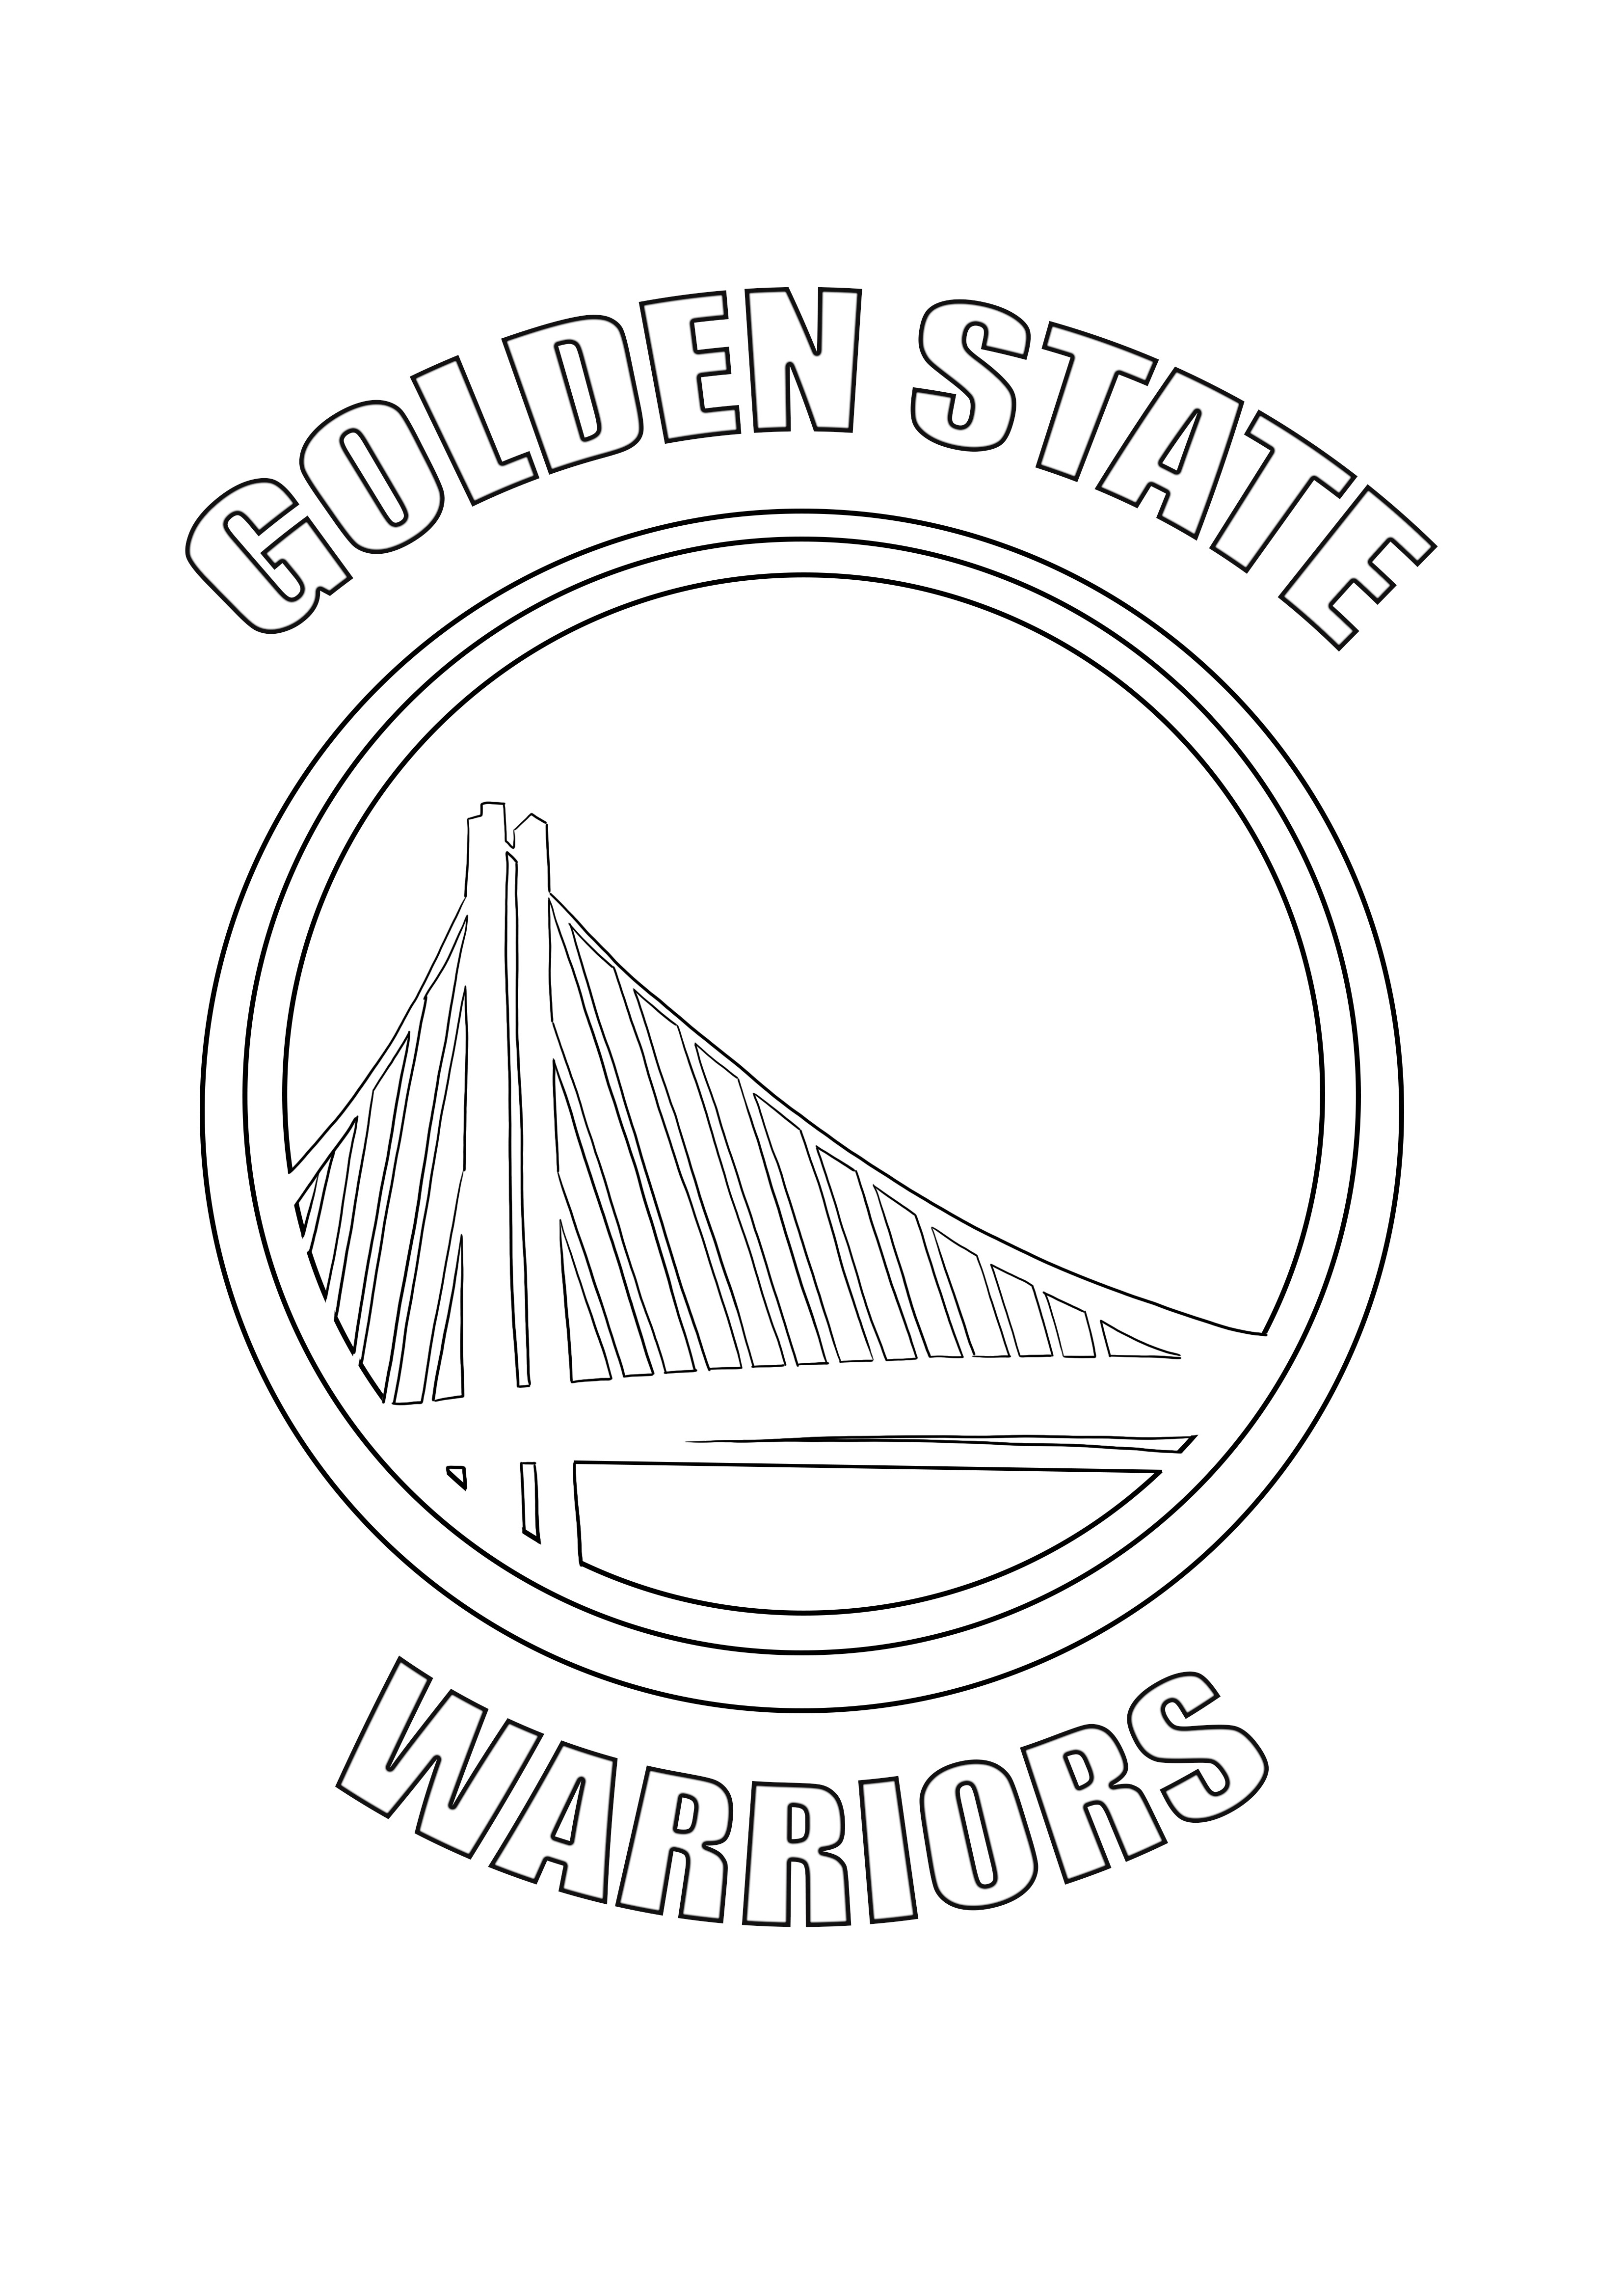 Logo der Golden State Warriors zum kostenlosen Ausdrucken und Ausmalen